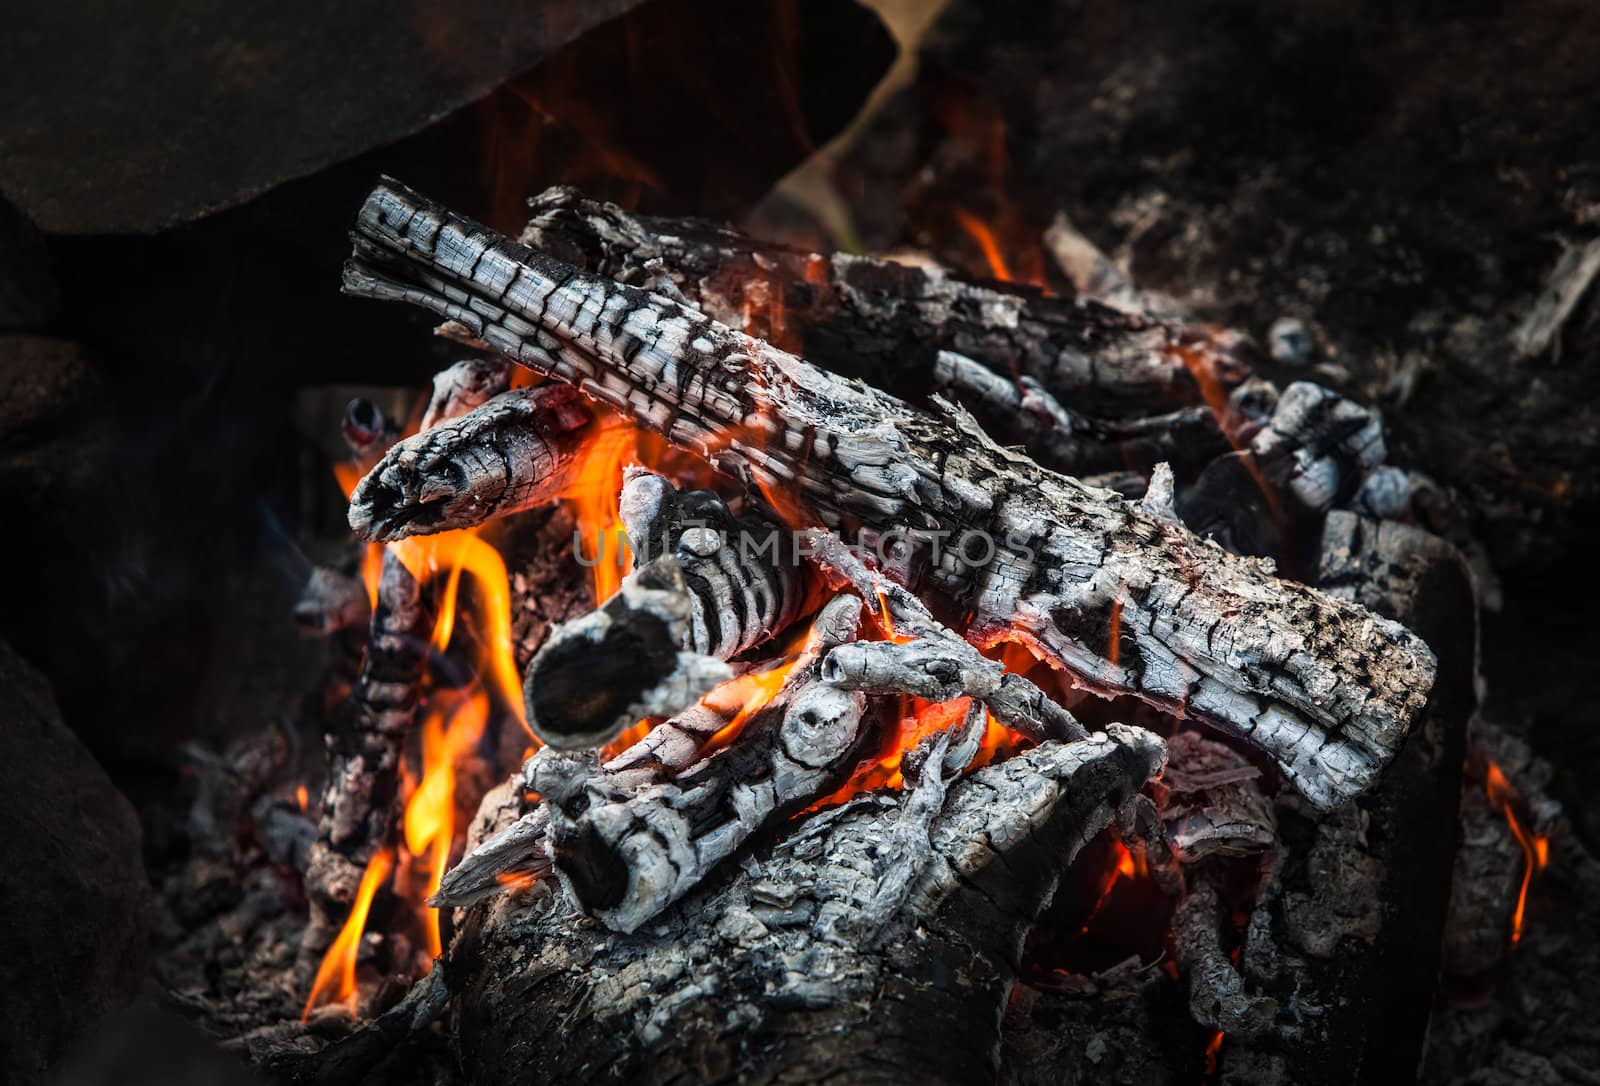 Bonfire. Closeup of hot burning wood, coals